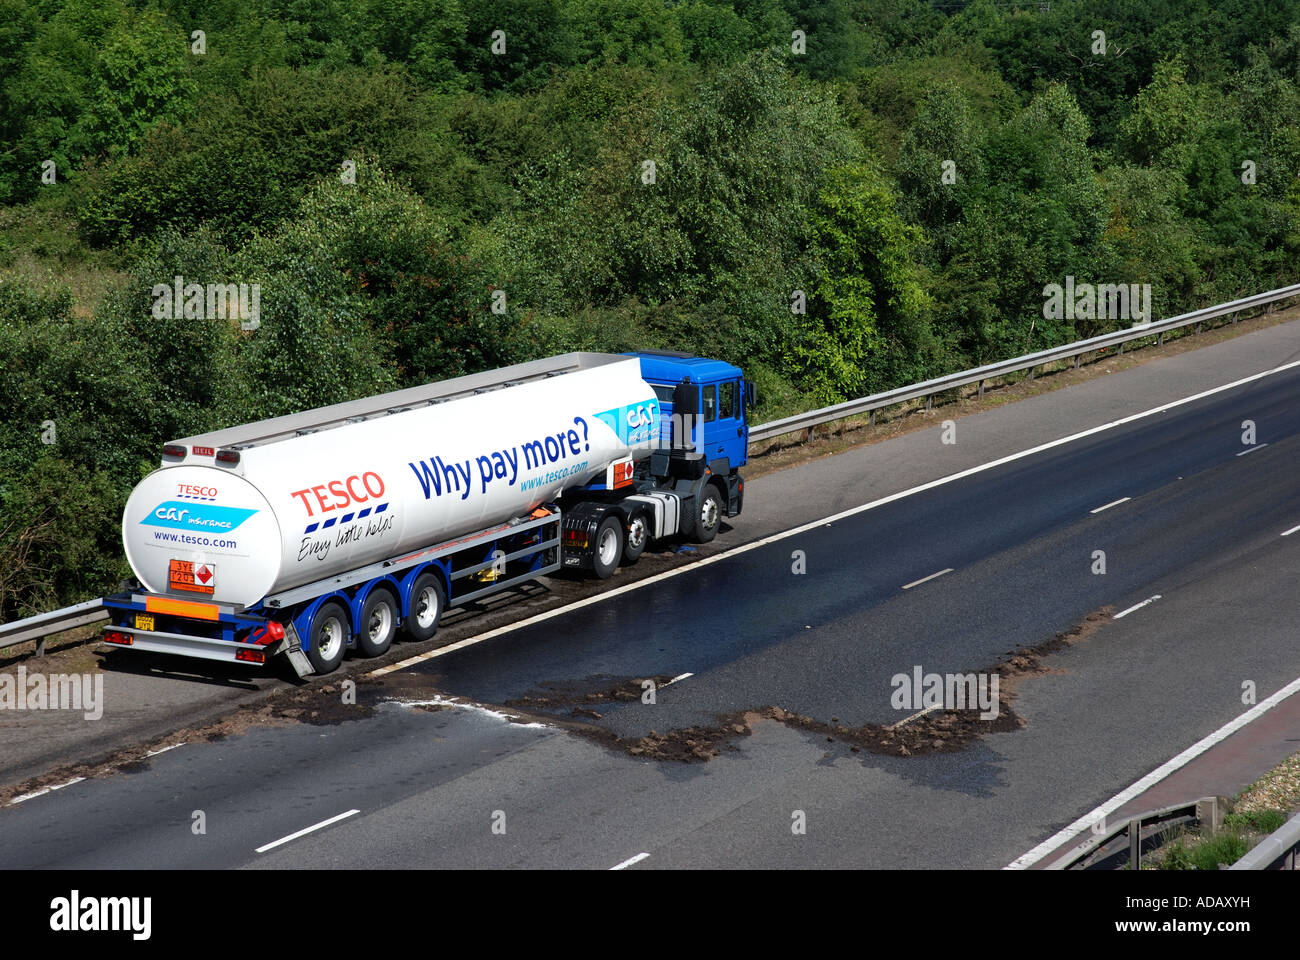 Diesel spillage from Tesco tanker on M40 motorway, Warwickshire, England, UK Stock Photo